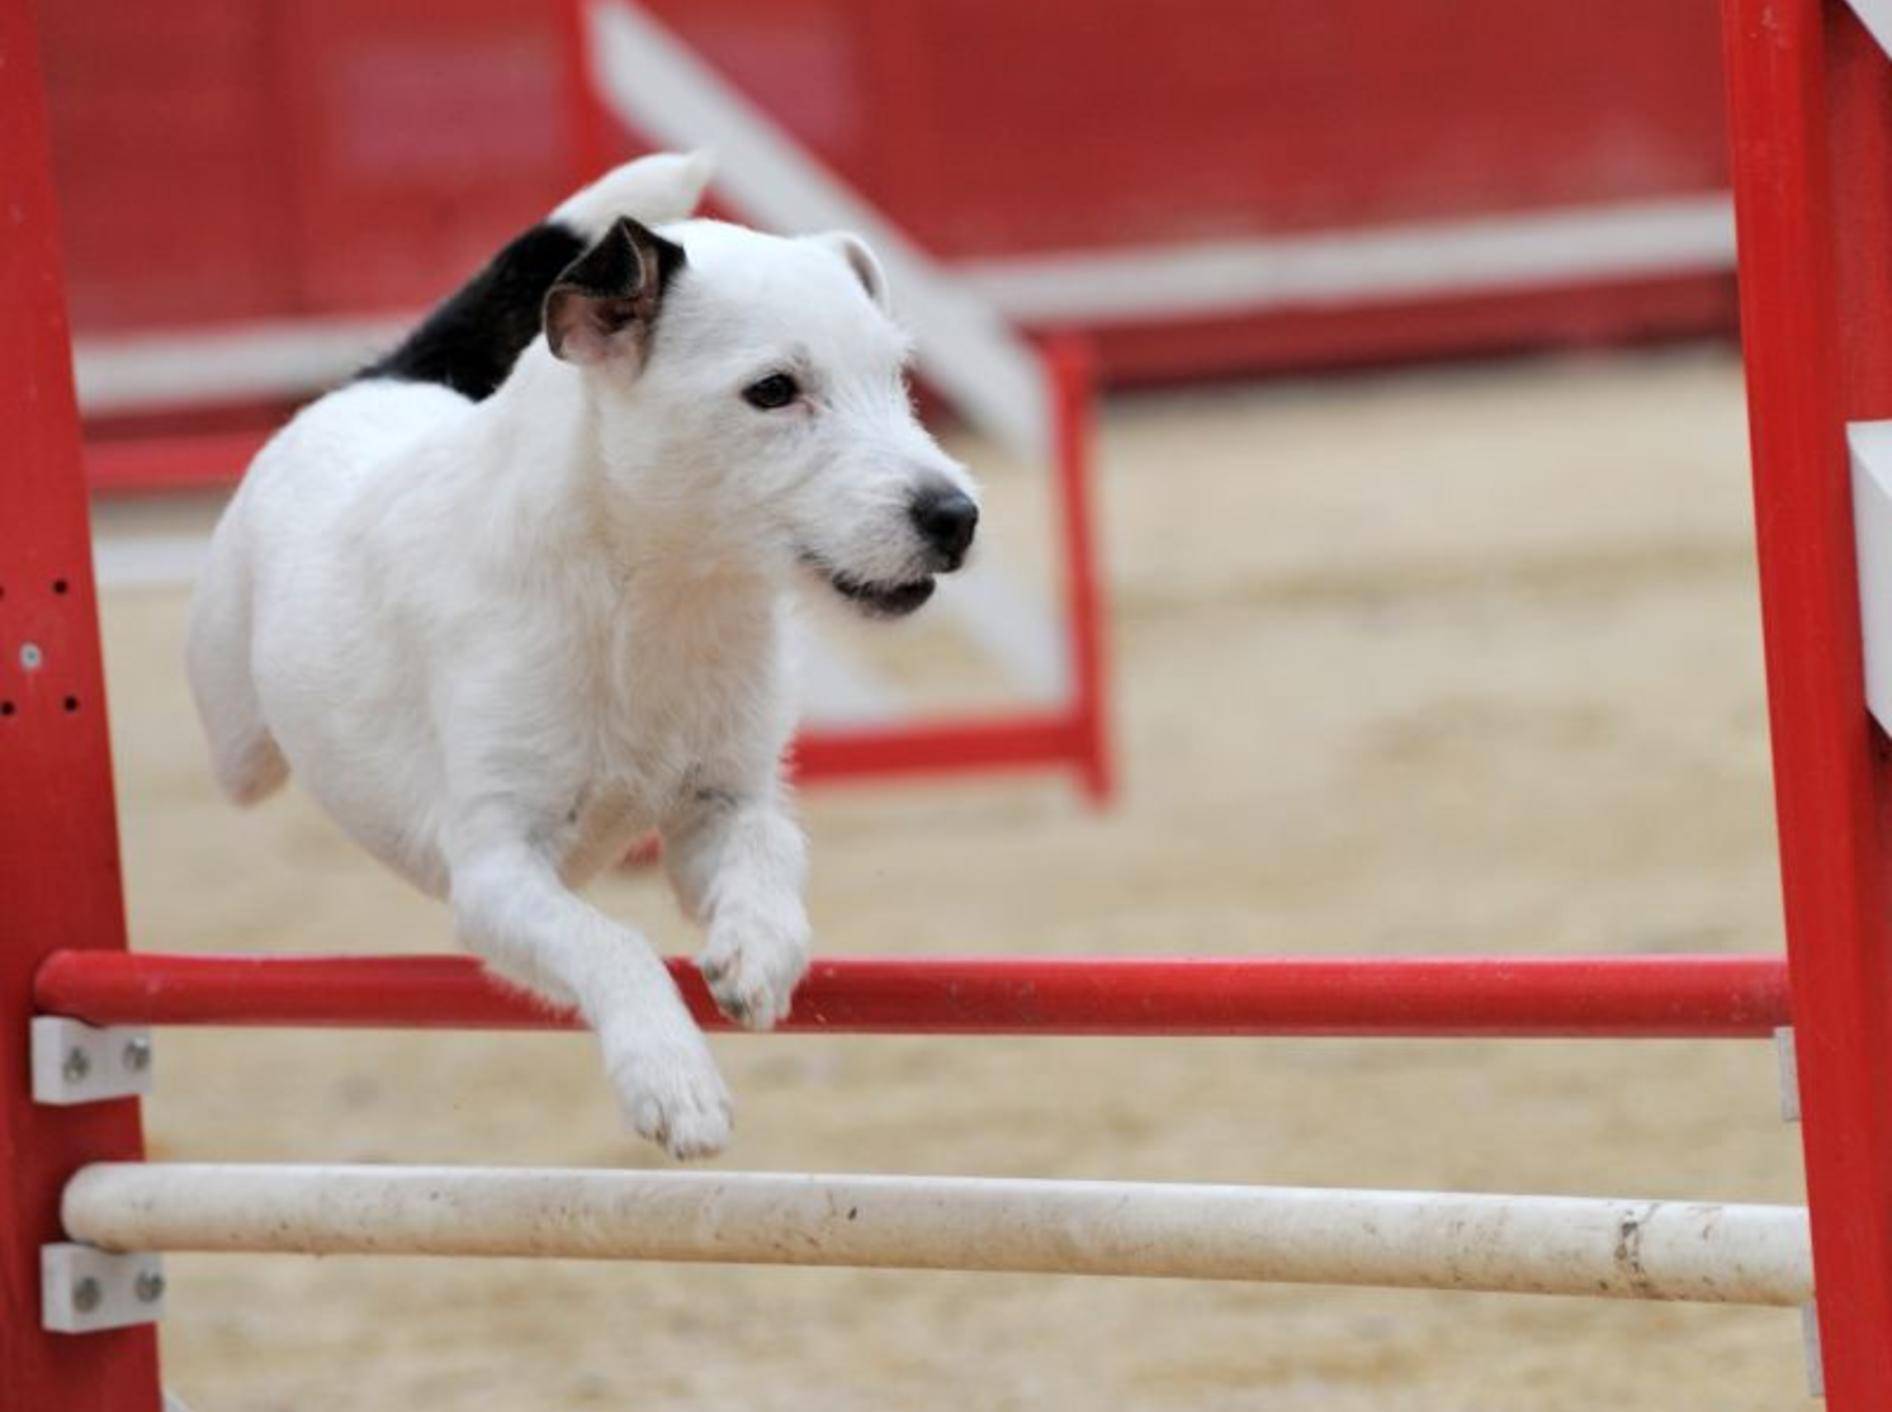 Wichtig für die Haltung: Jack Russell Terrier brauchen viel Beschäftigung – Bild: Shutterstock / cynoclub